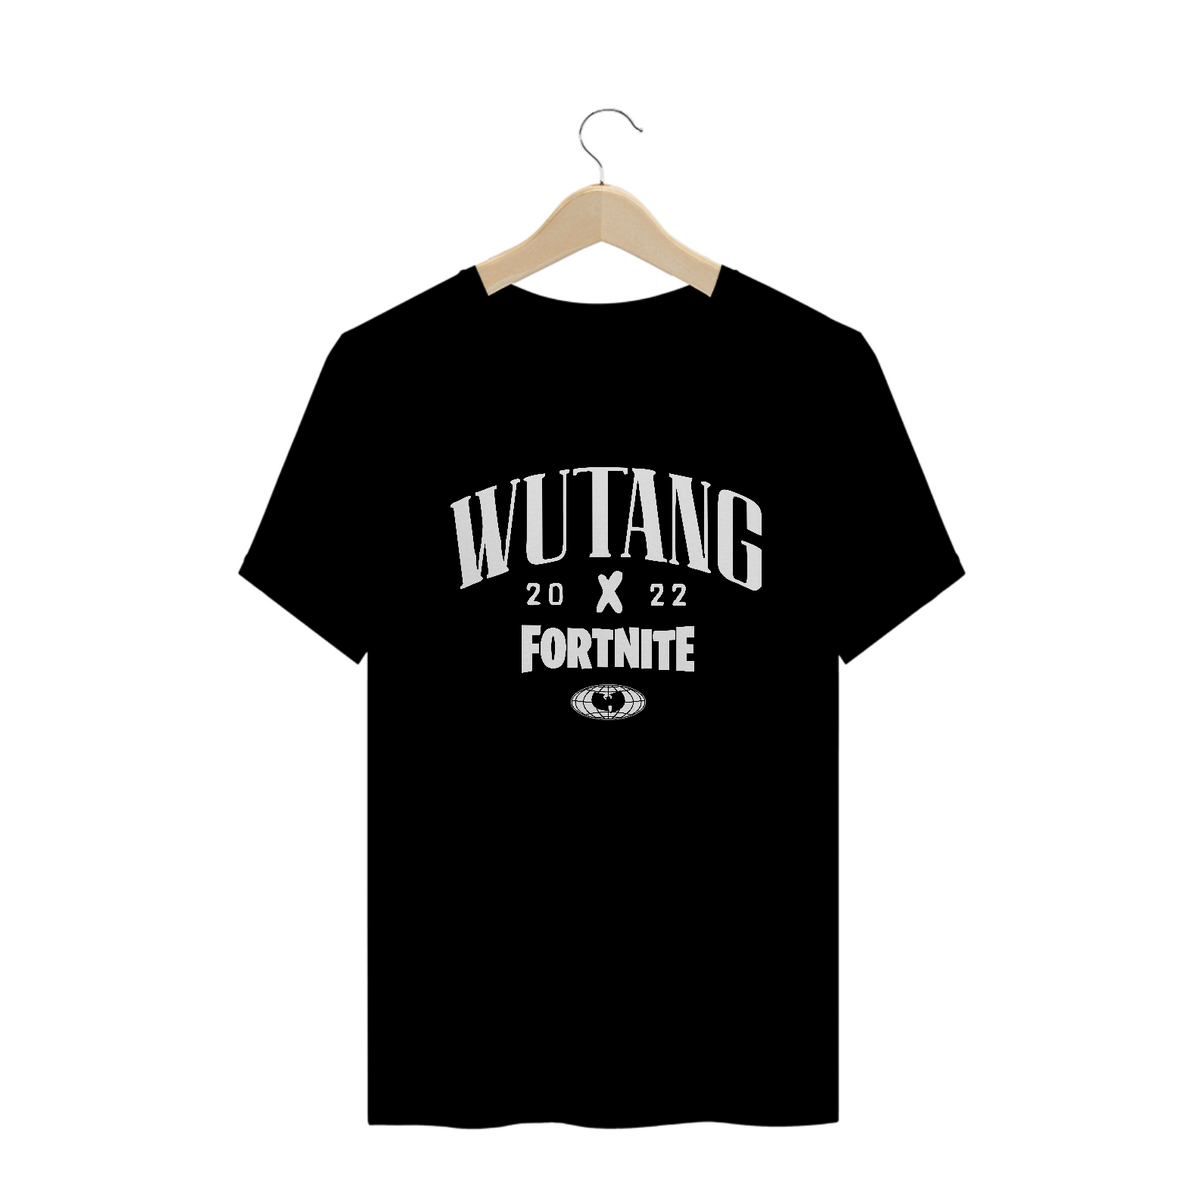 Nome do produto: Camiseta de Malha Quality Wu Tang Clan Fortnite Branco